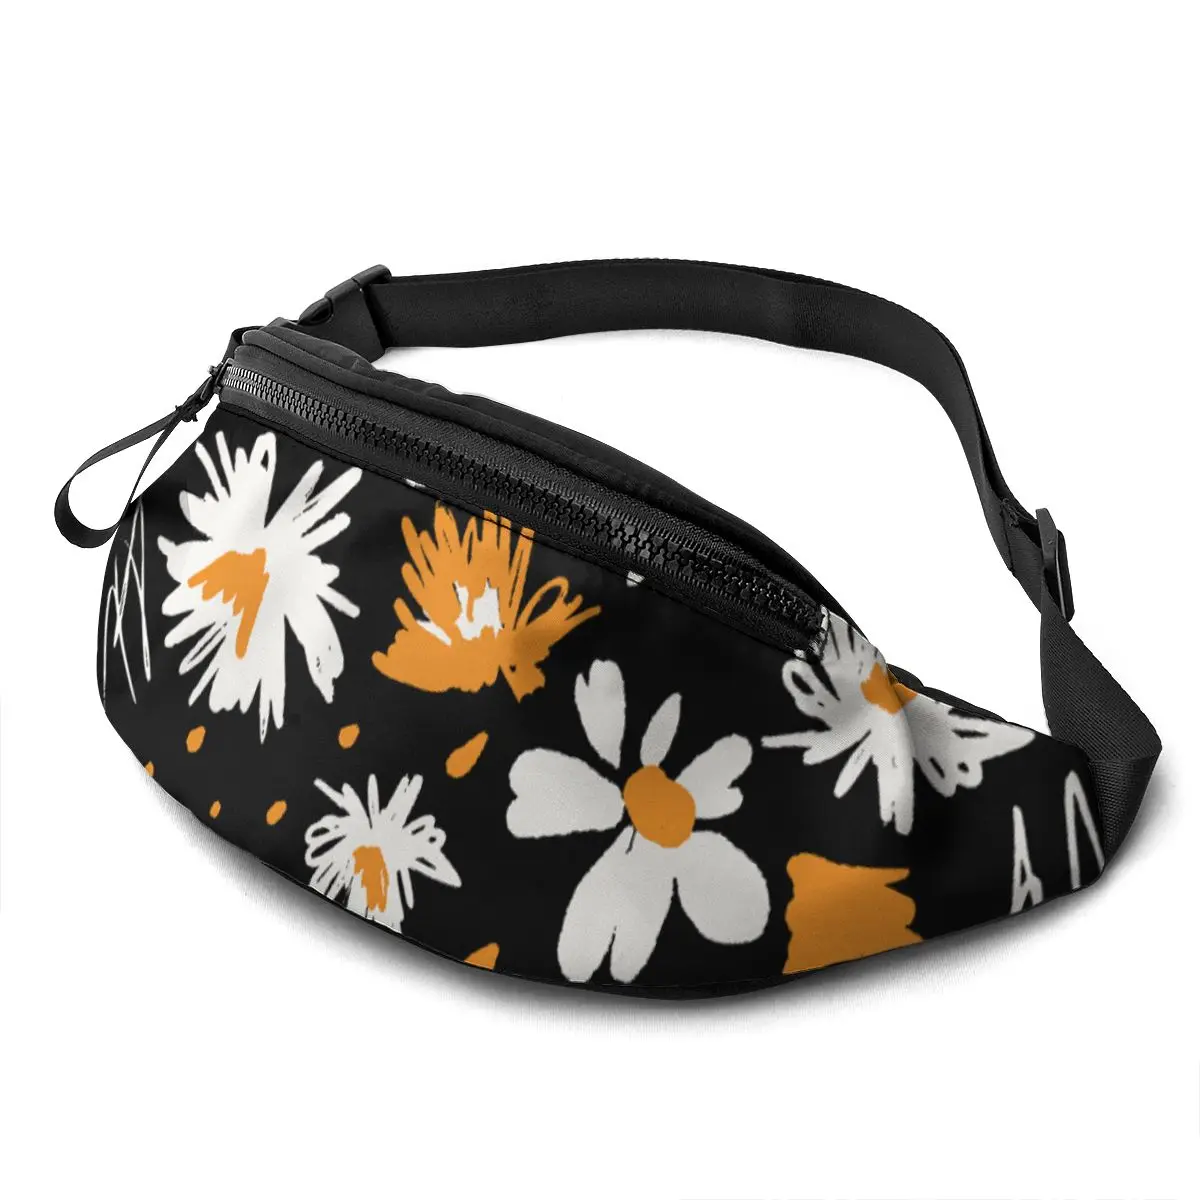 

NOISYDESIGNS Daisy Print Unisex Running Waist pack Adjustable Chest Bags Zipper Hip Money Belt Pouch Female Travel Banana bags